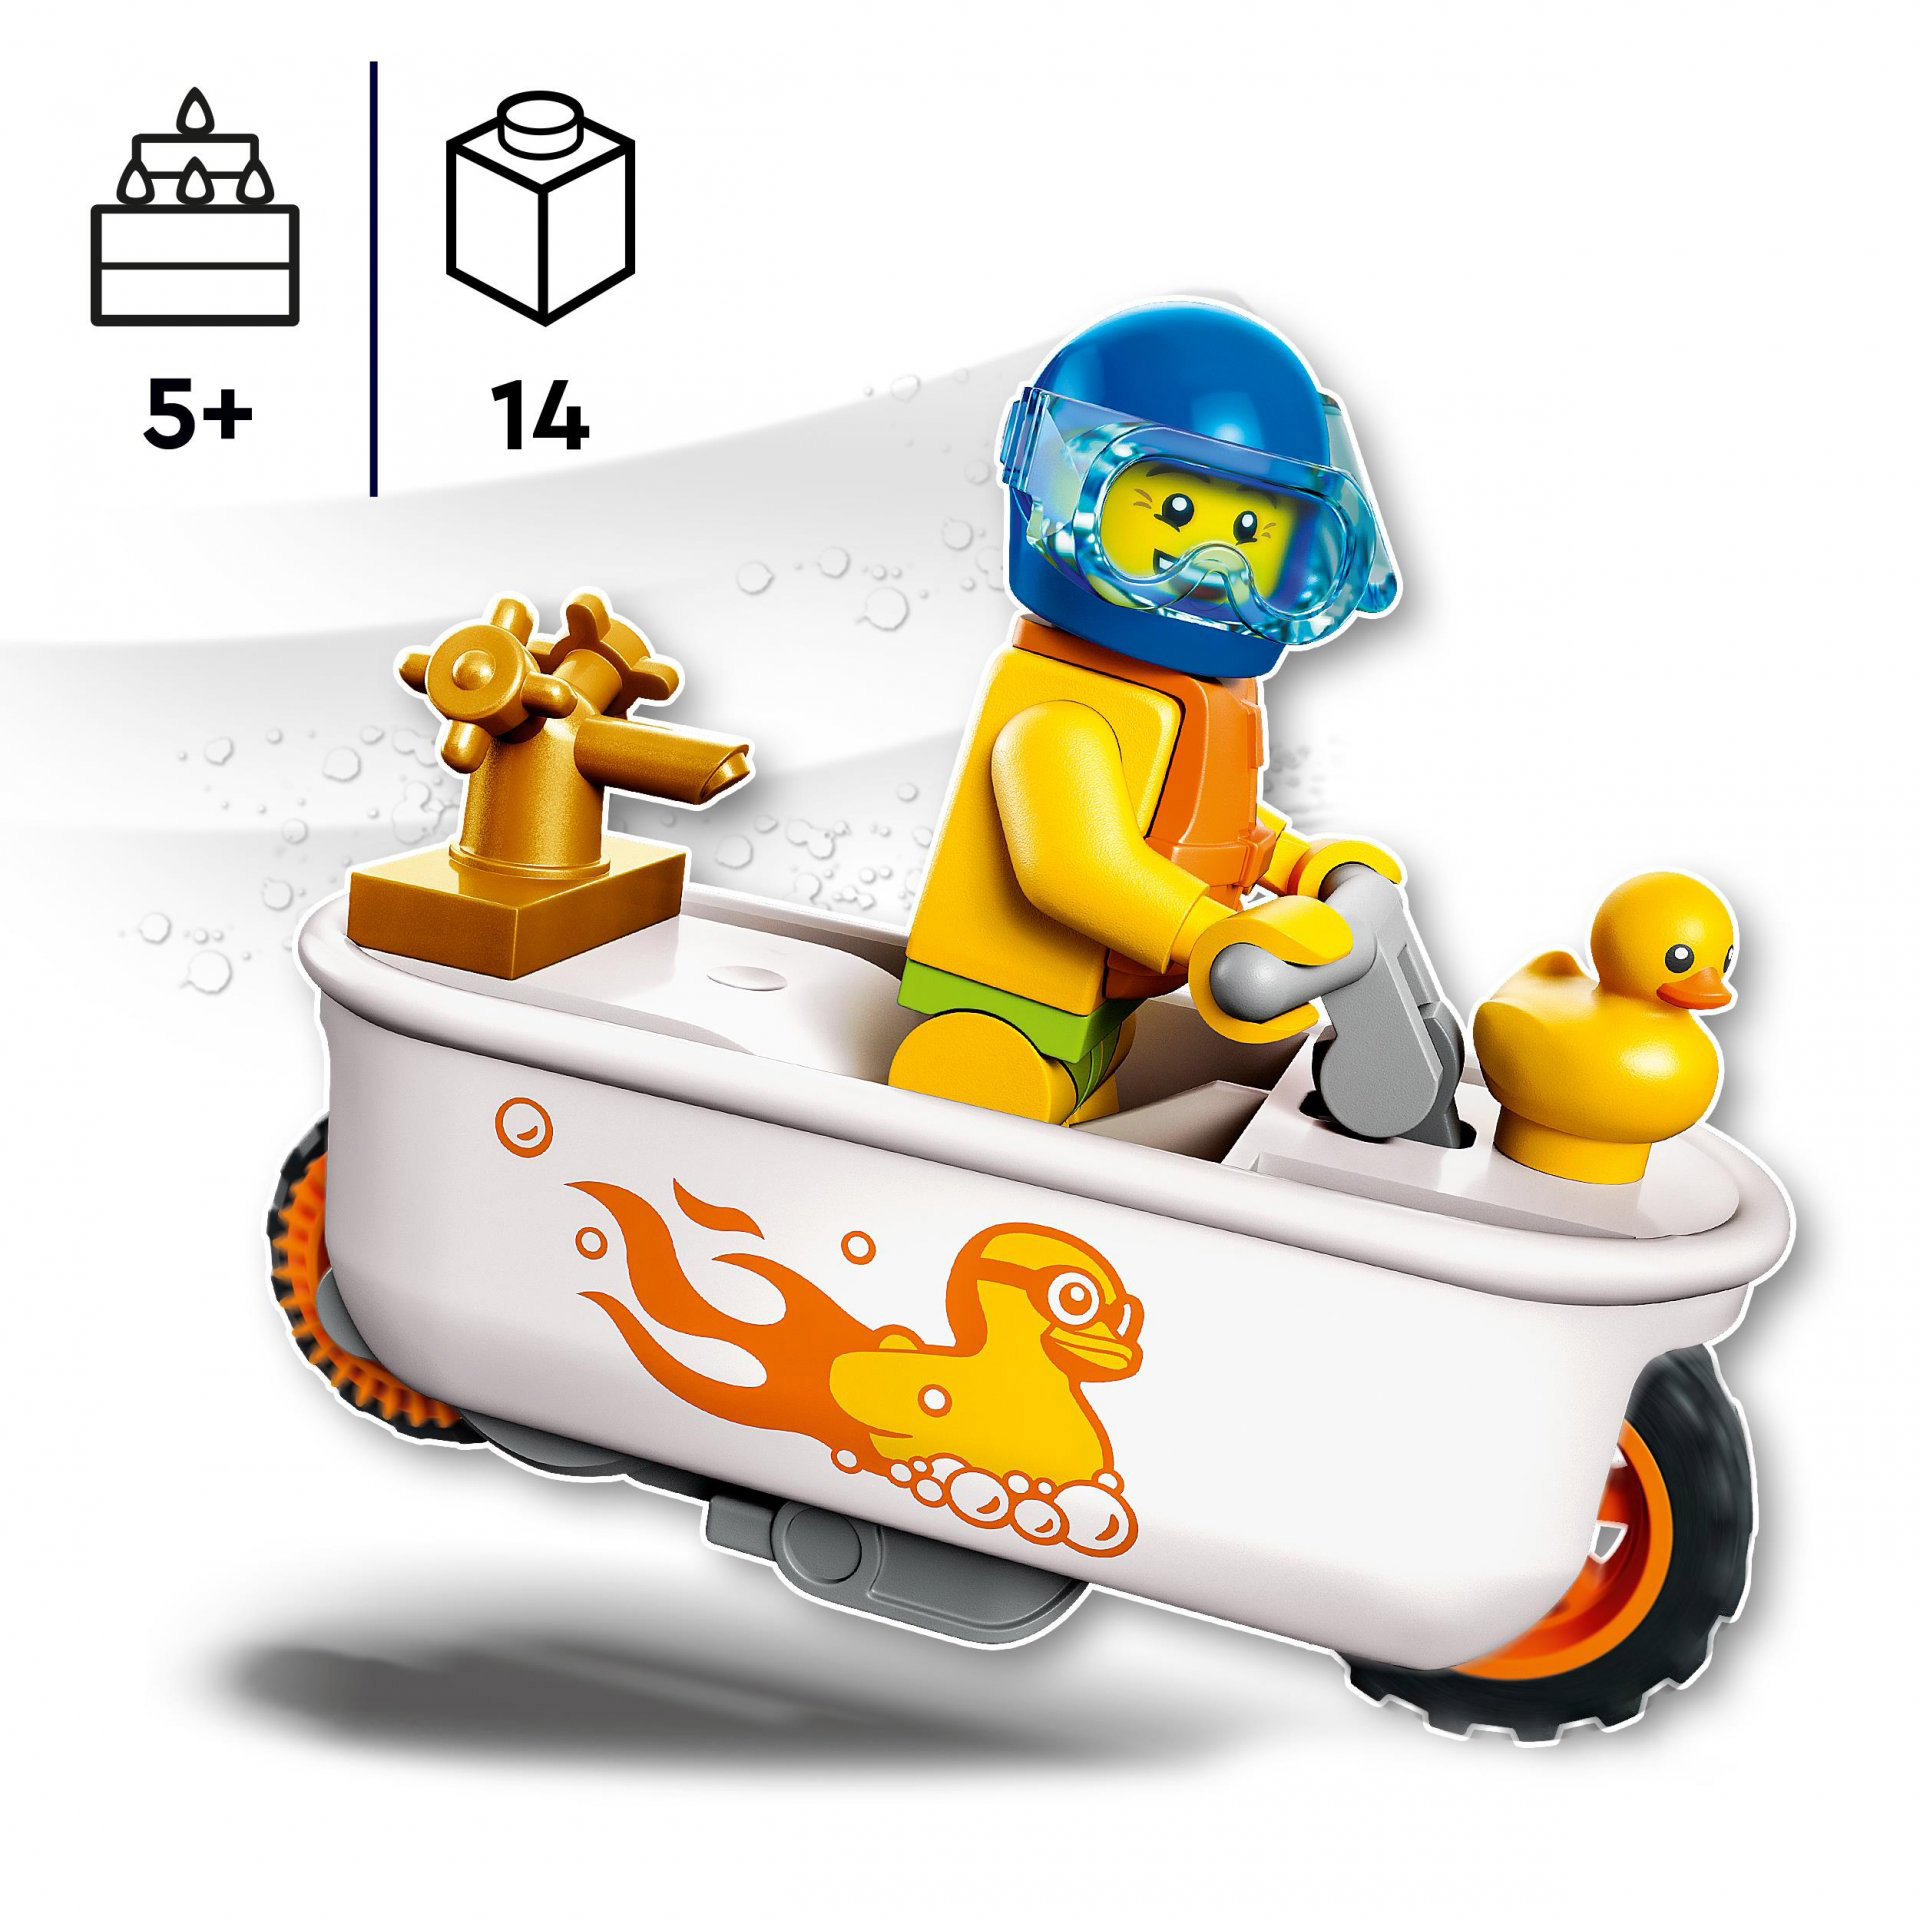 LEGO City Stuntz Stunt Bike Vasca da Bagno, Moto Giocattolo Carica e Vai con Min 60333, , large